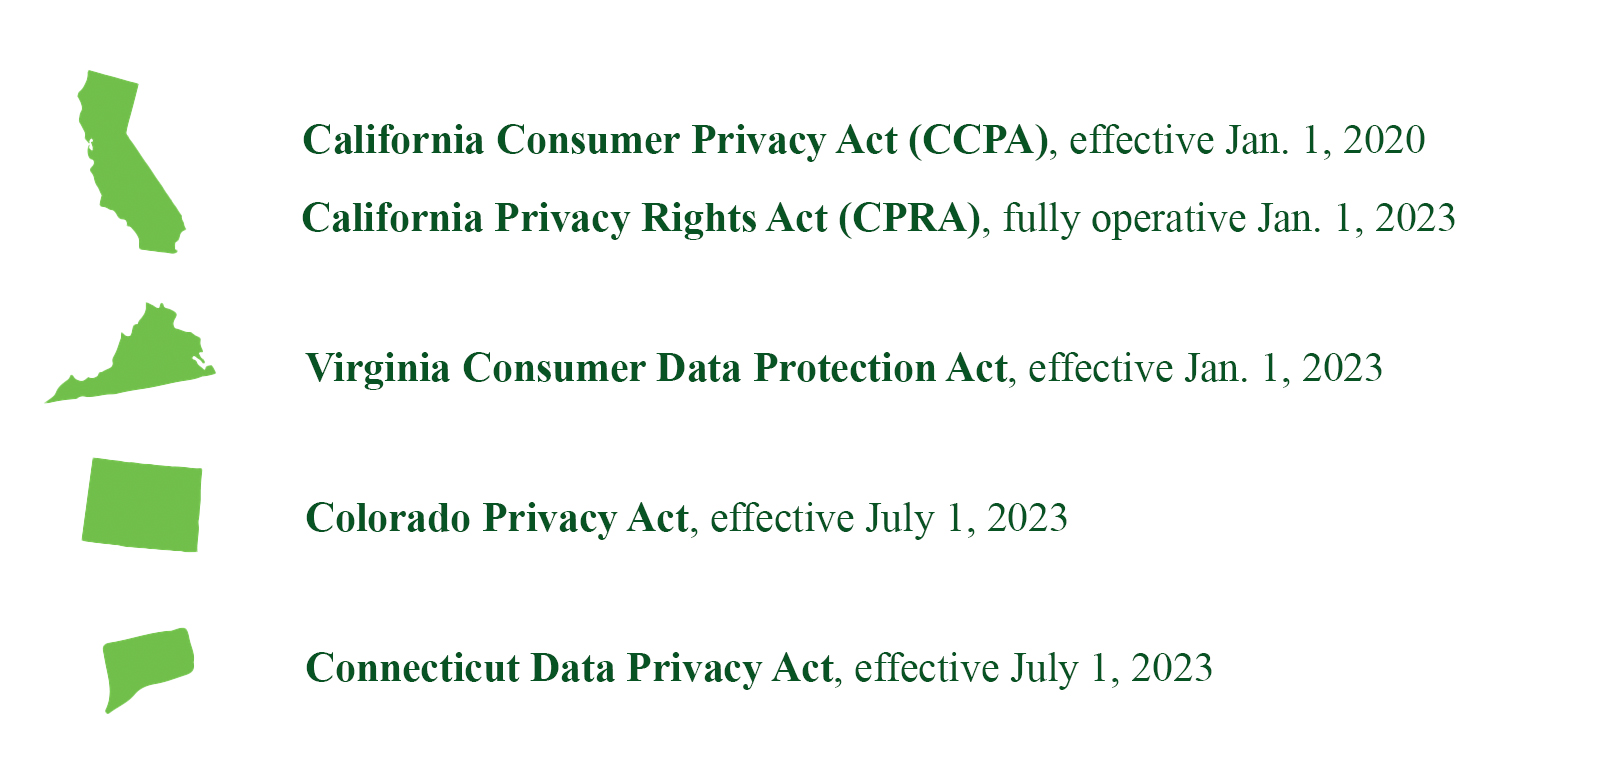 CA, VA, CO, CT privacy laws